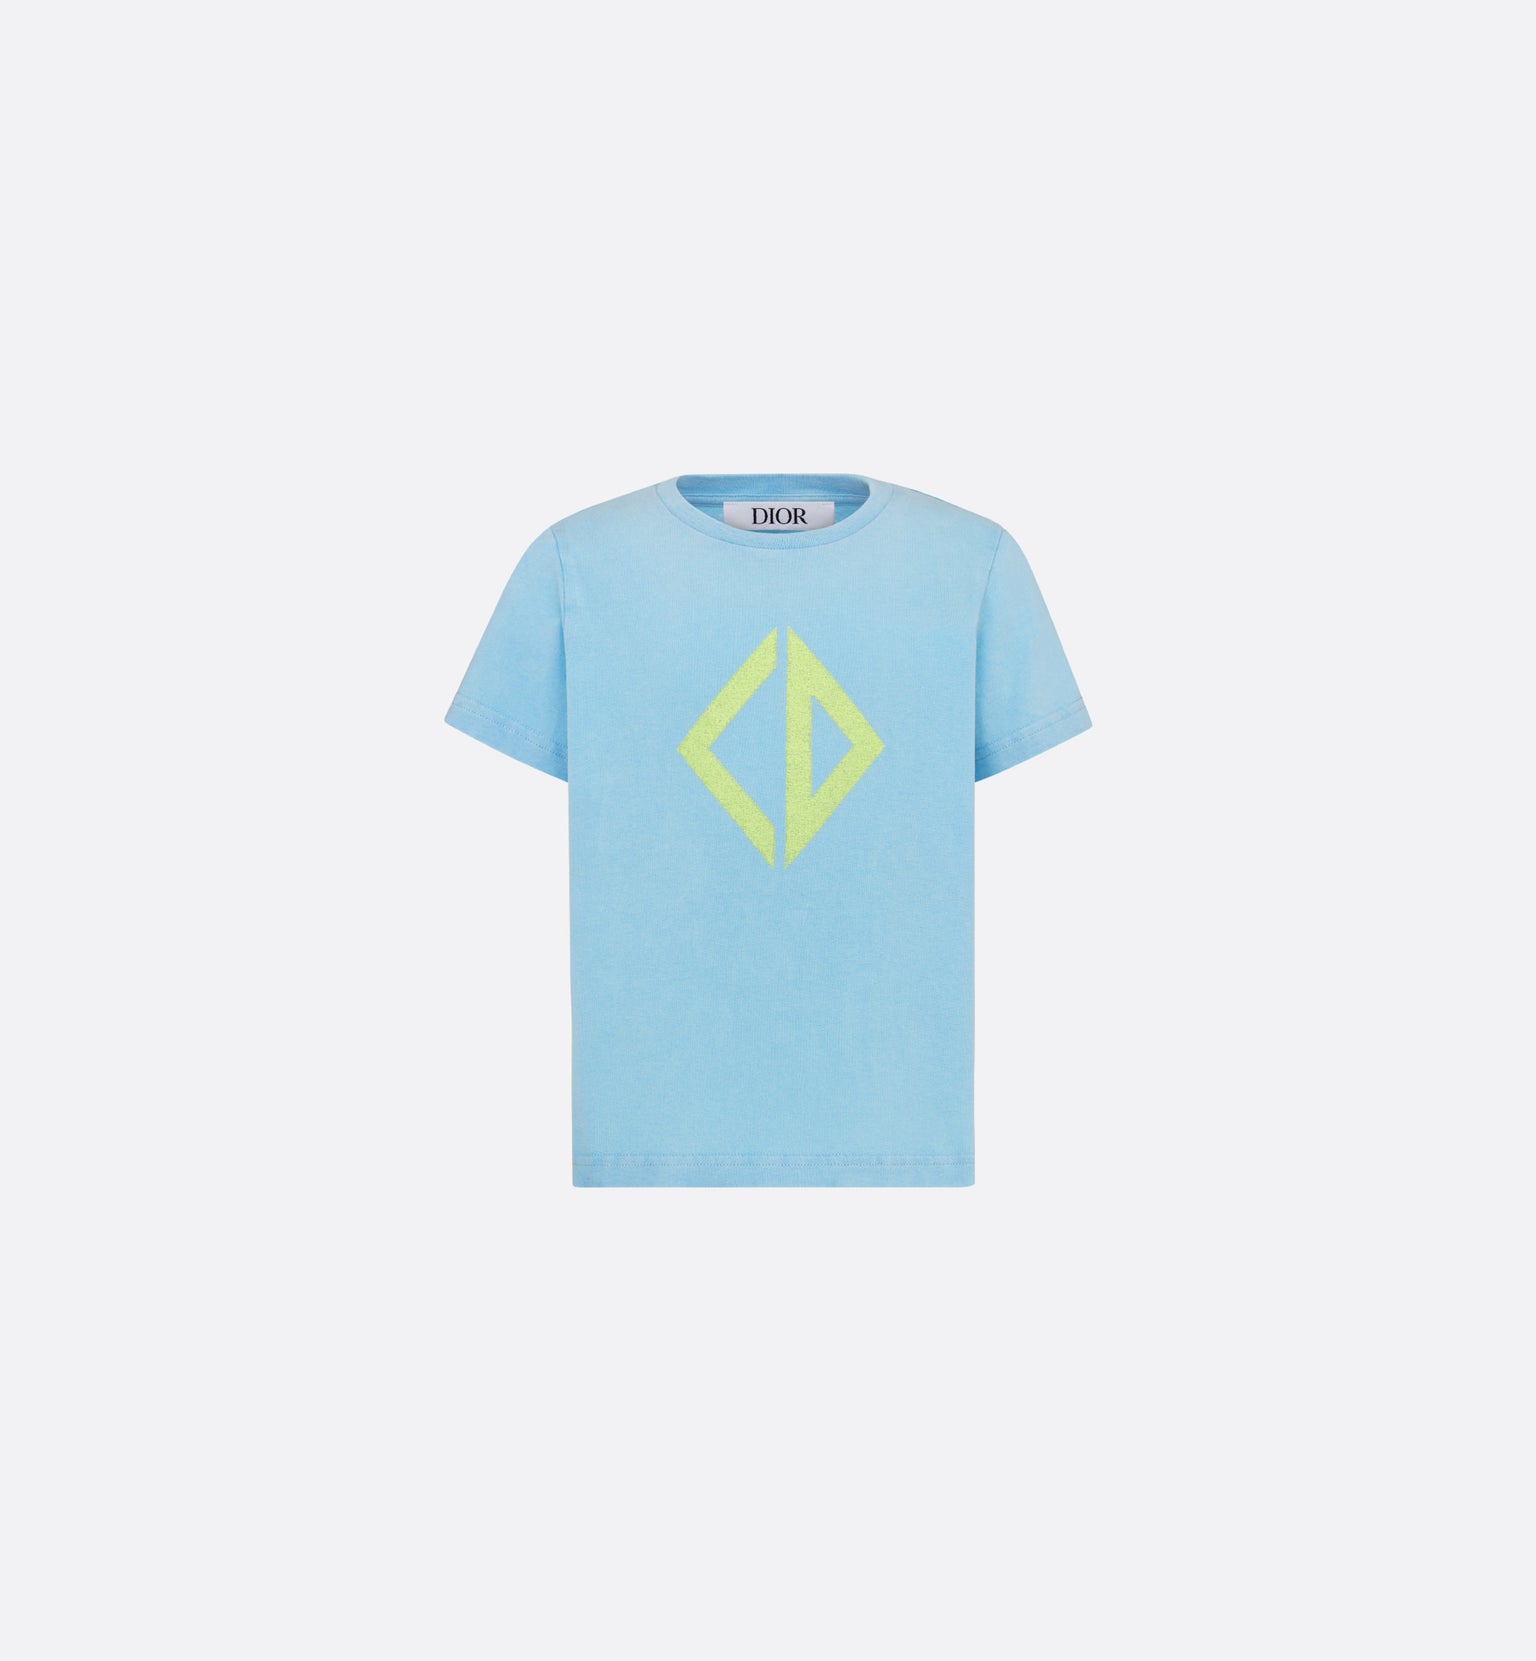 Kid's T-Shirt • Light Blue Cotton Jersey